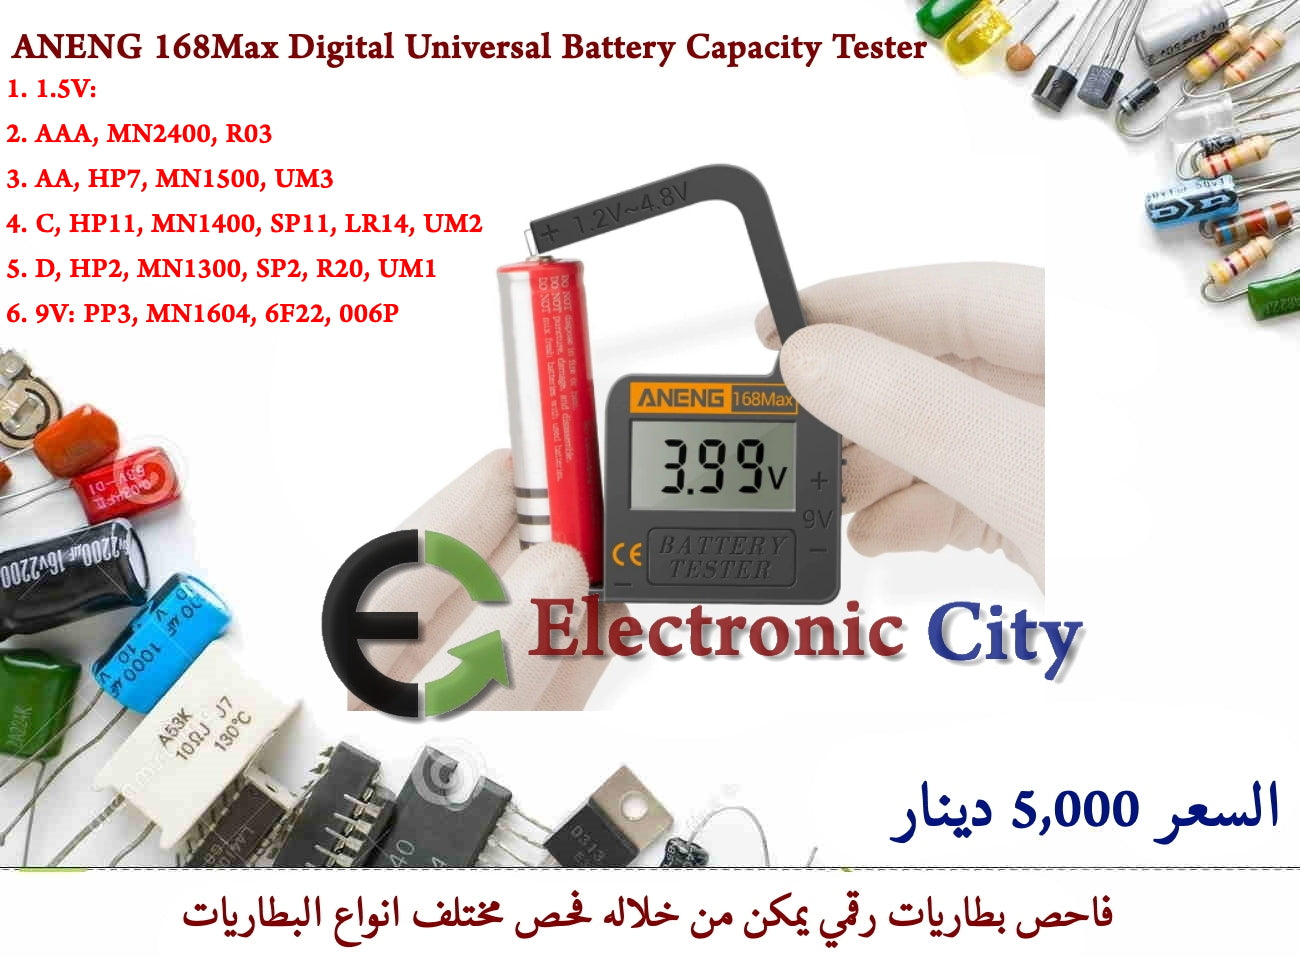 ANENG 168Max Digital Universal Battery Capacity Tester